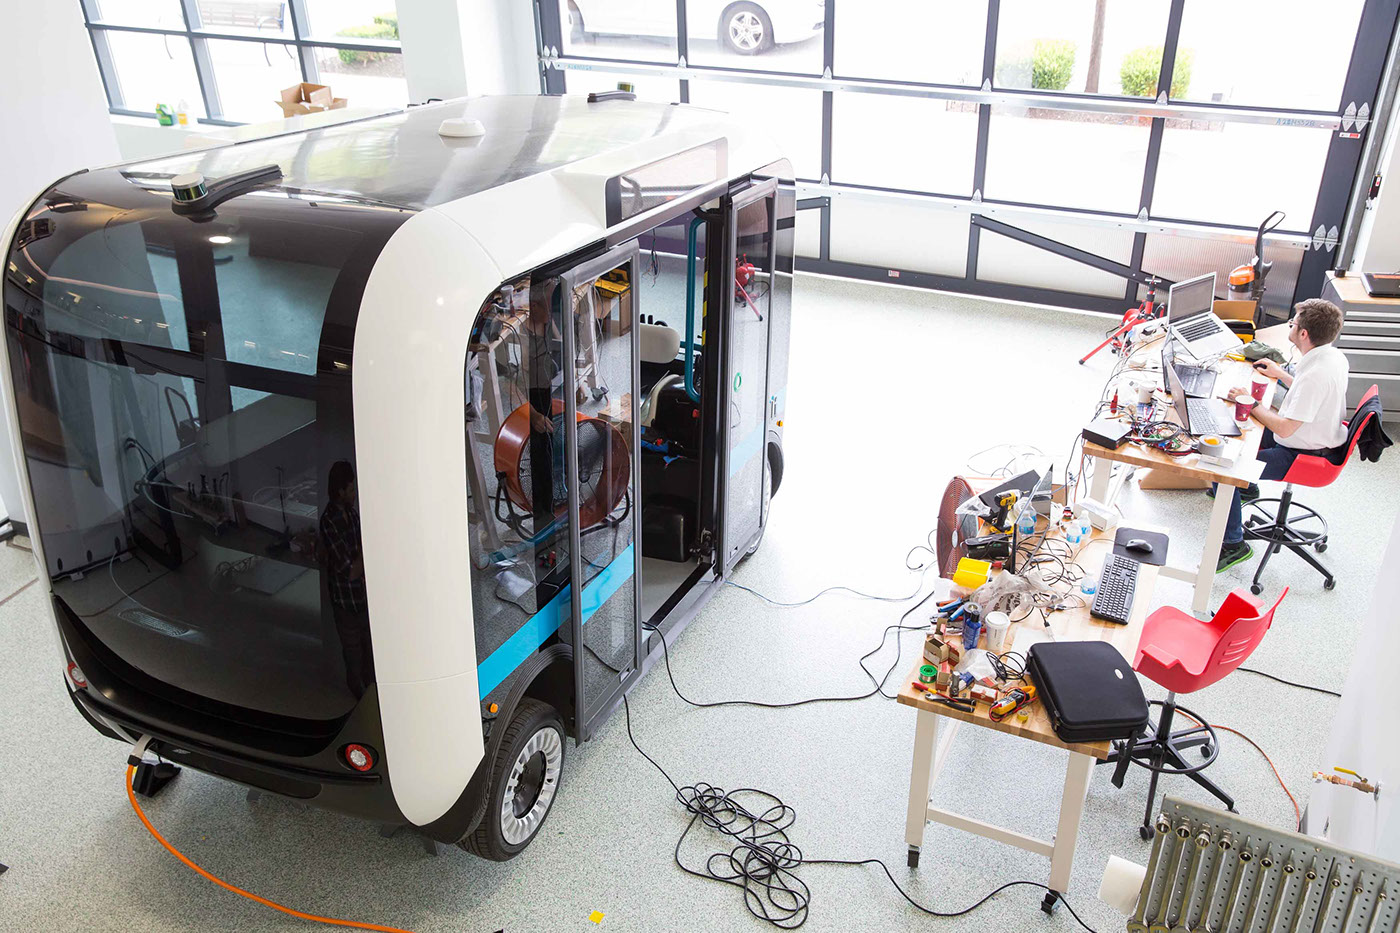 olli Local Motors Berlino bus electric shuttle cab concept autonomus futuristic